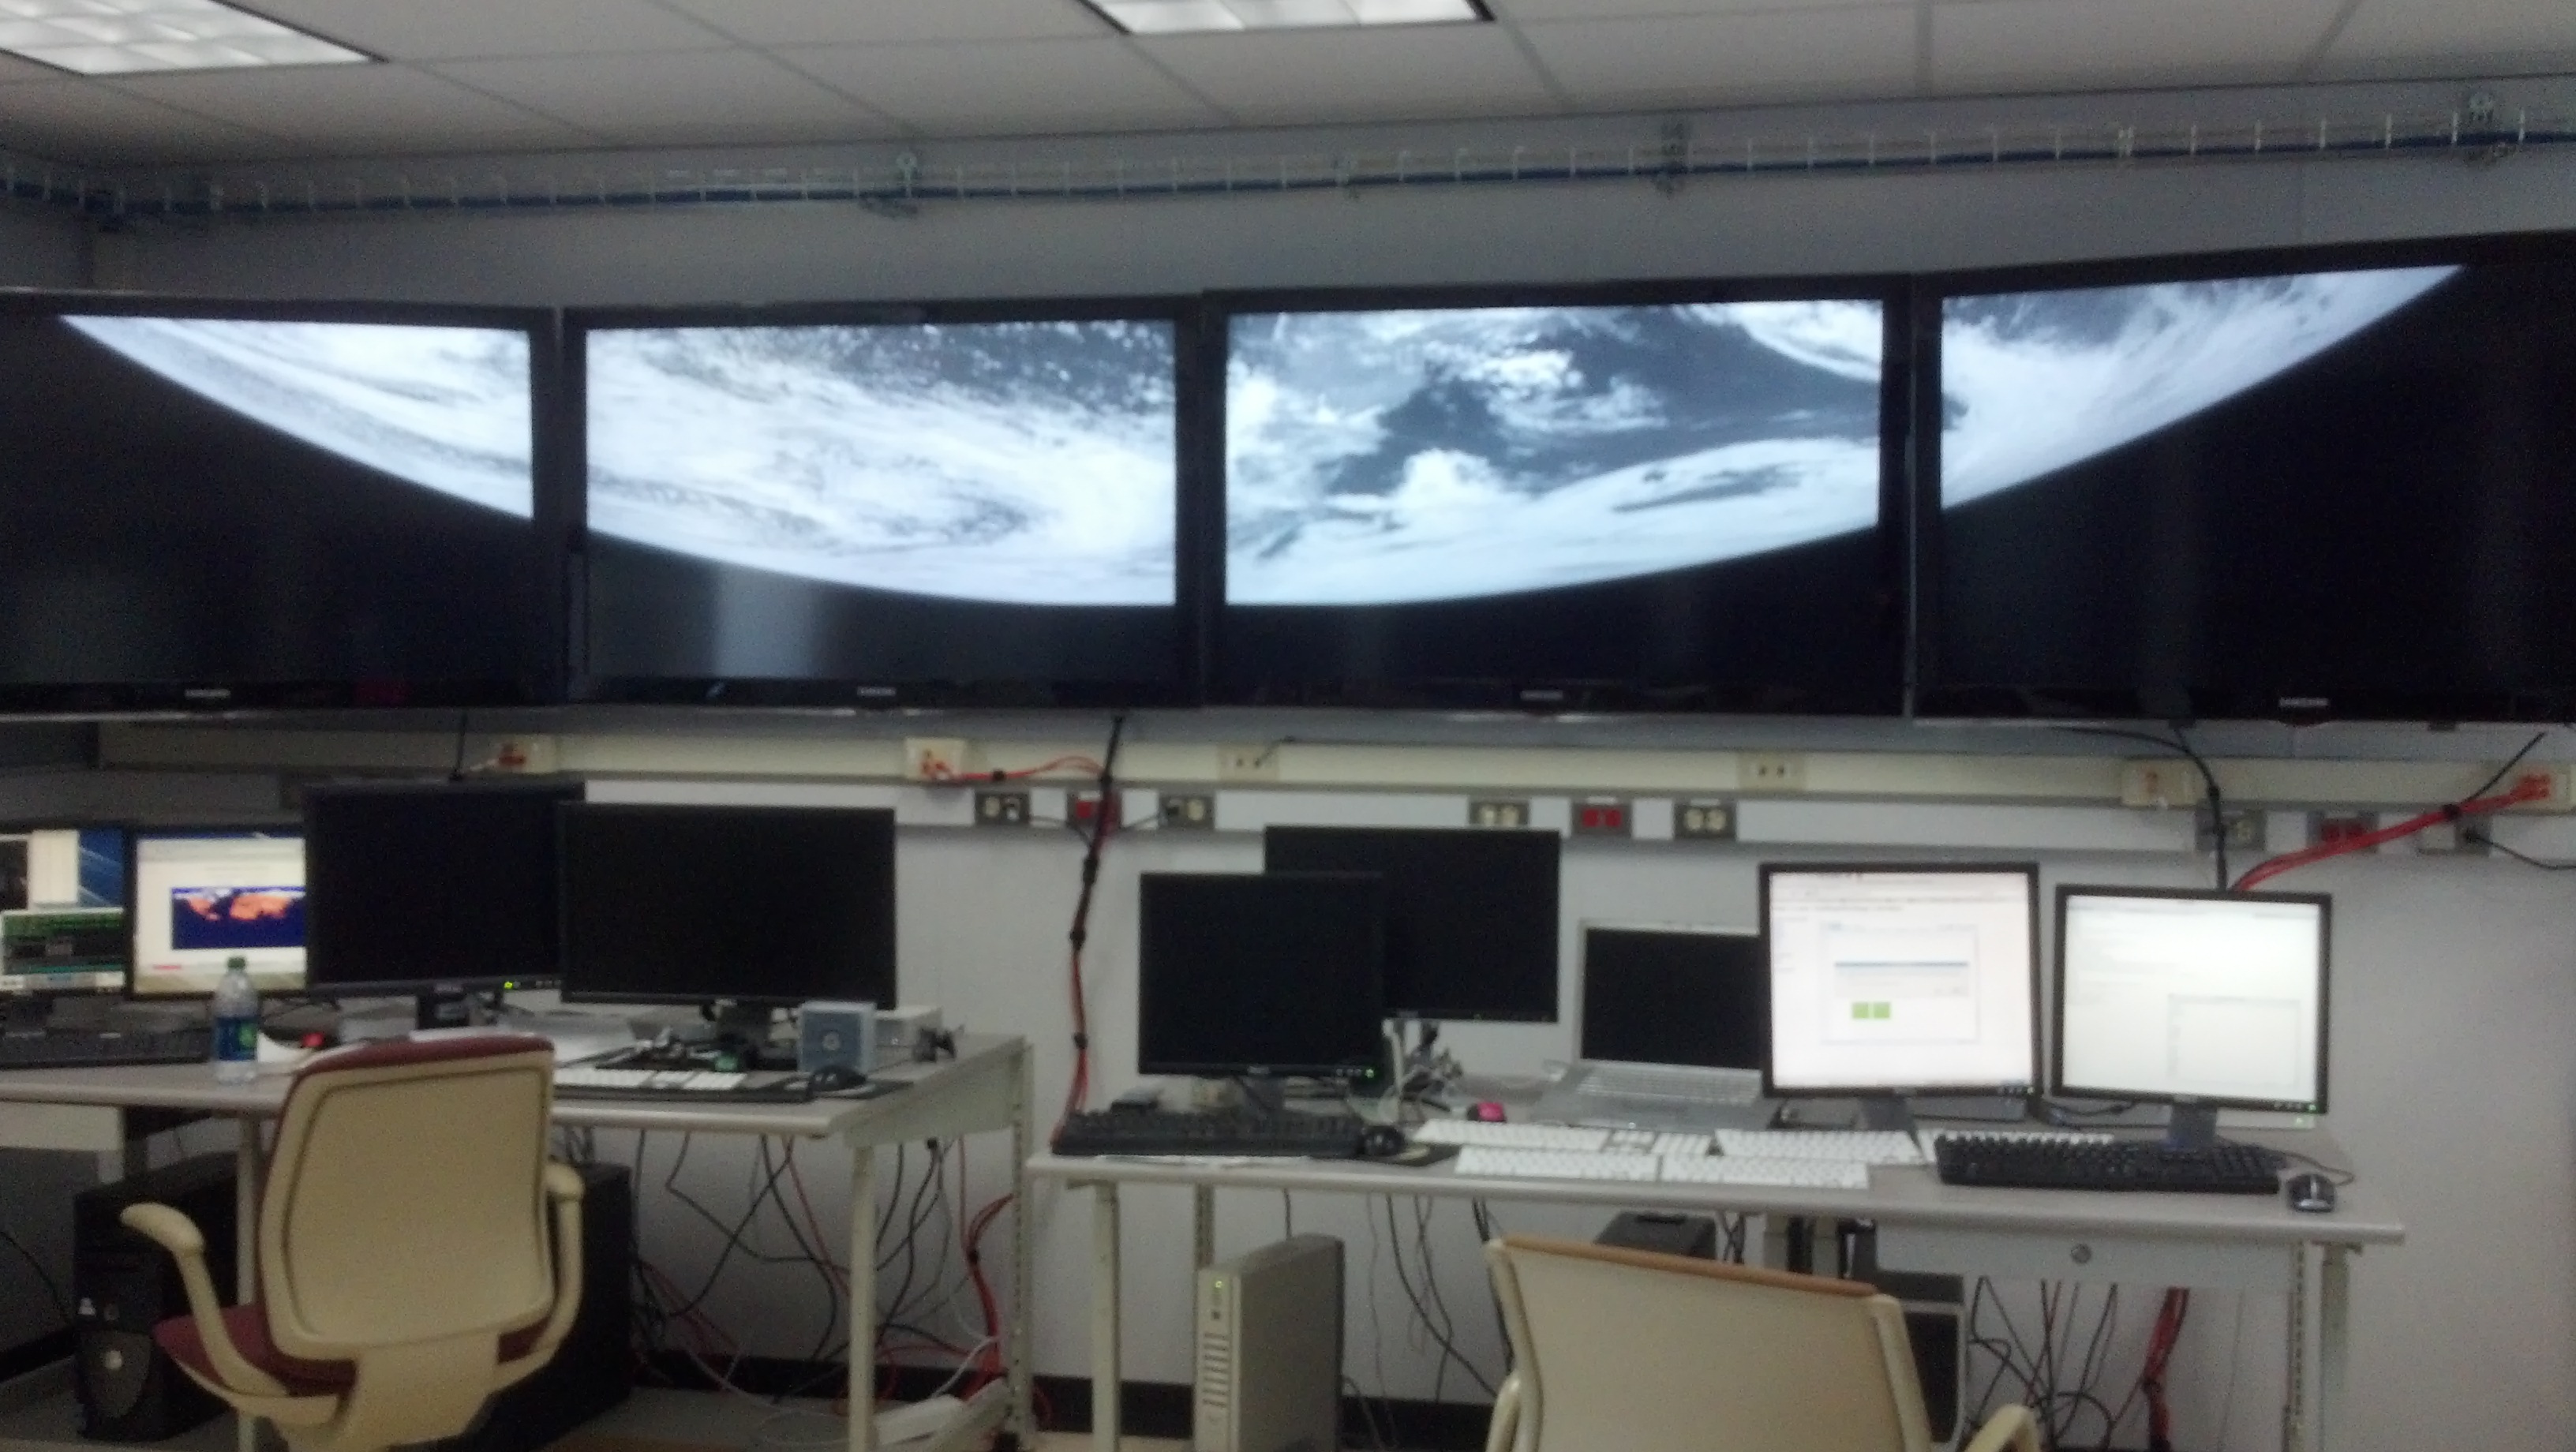 Earth rising across 4 monitors